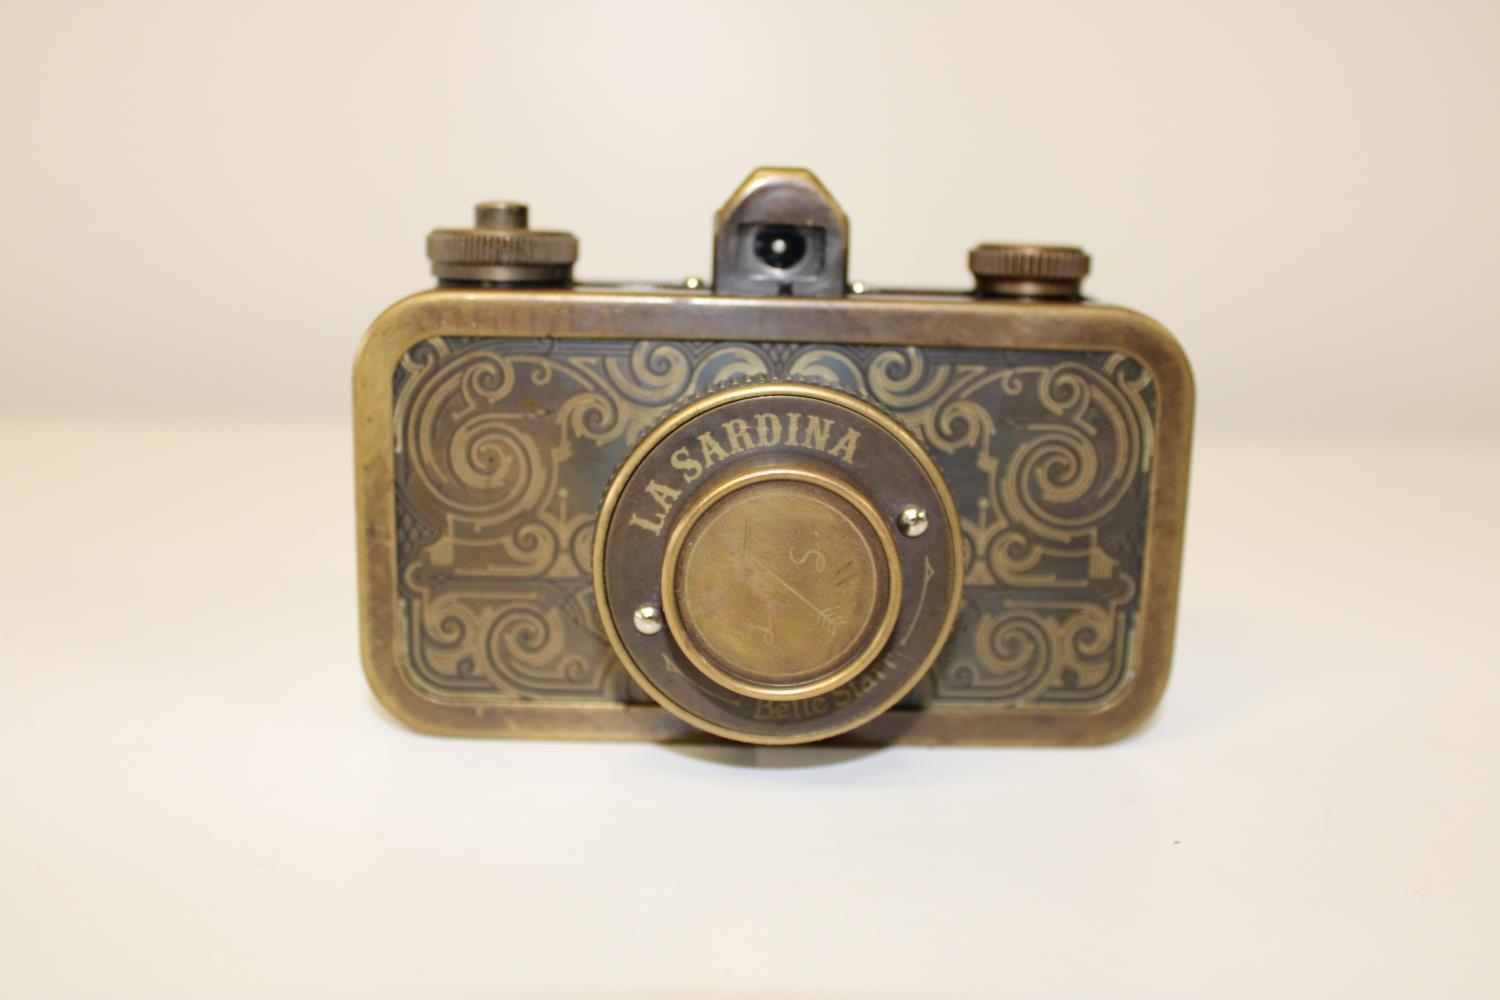 A vintage La Sardina camera in a brass bound case